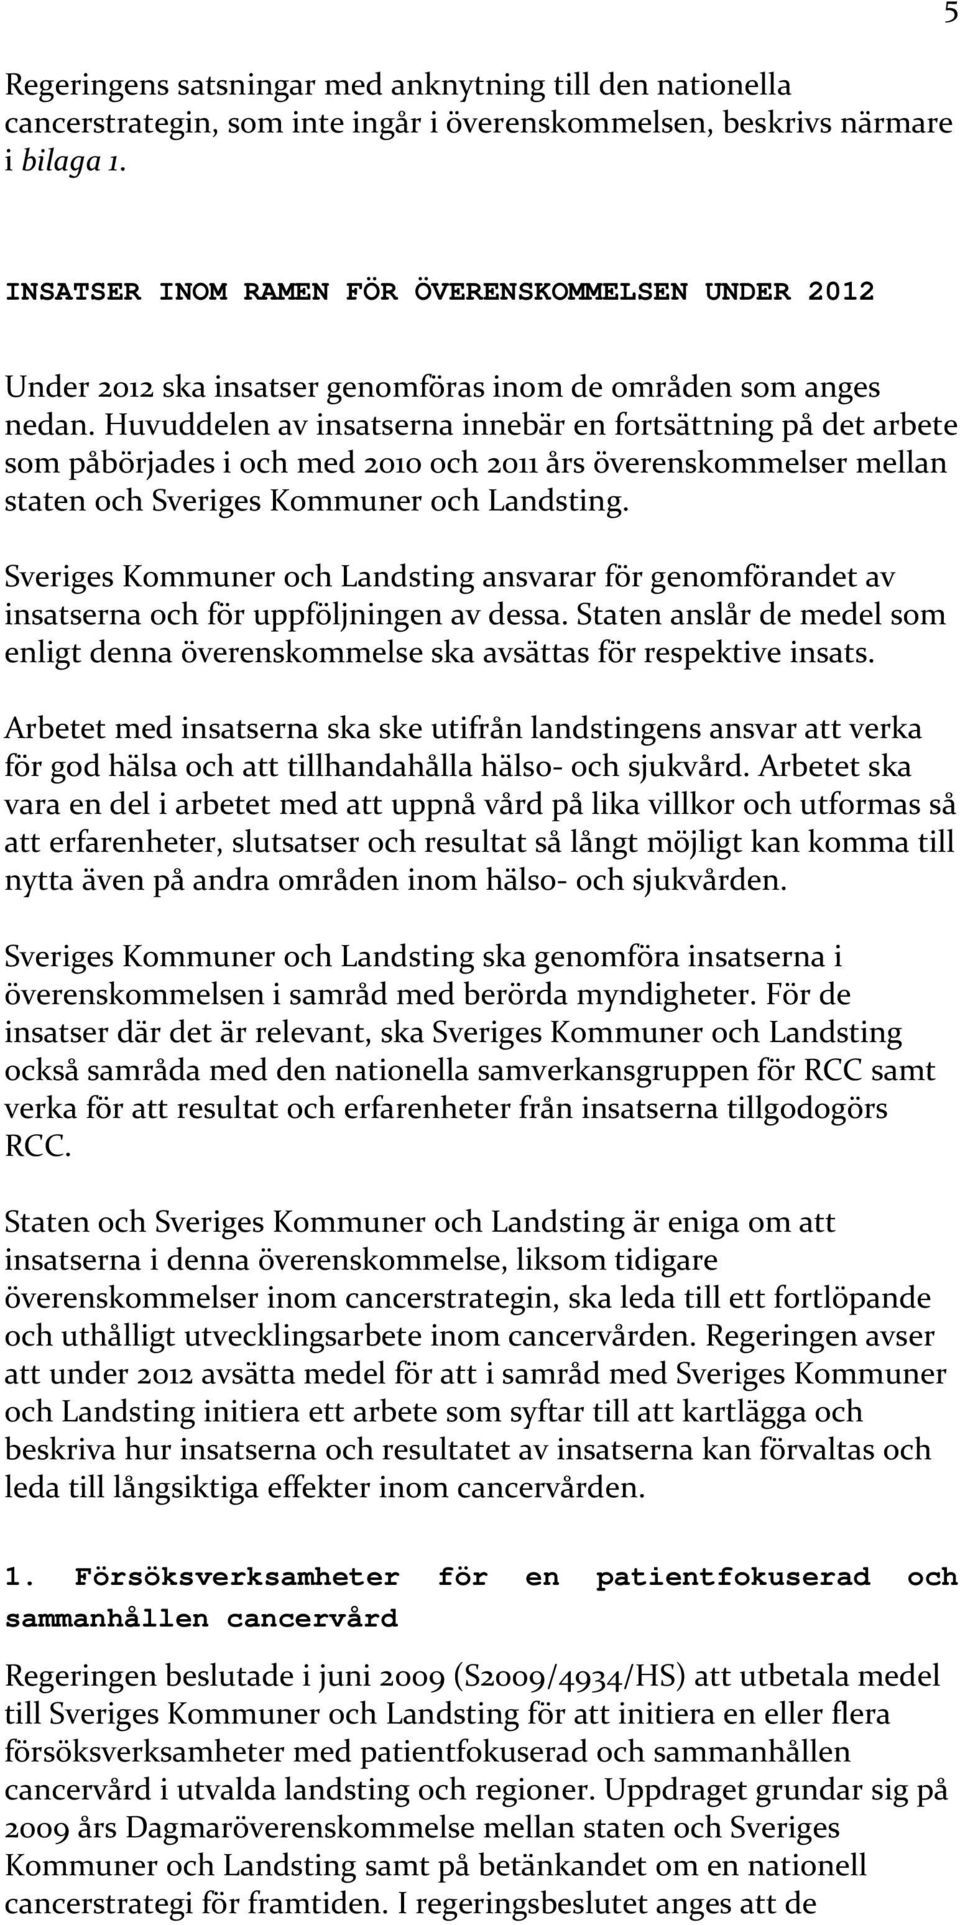 Huvuddelen av insatserna innebär en fortsättning på det arbete som påbörjades i och med 2010 och 2011 års överenskommelser mellan staten och Sveriges Kommuner och Landsting.